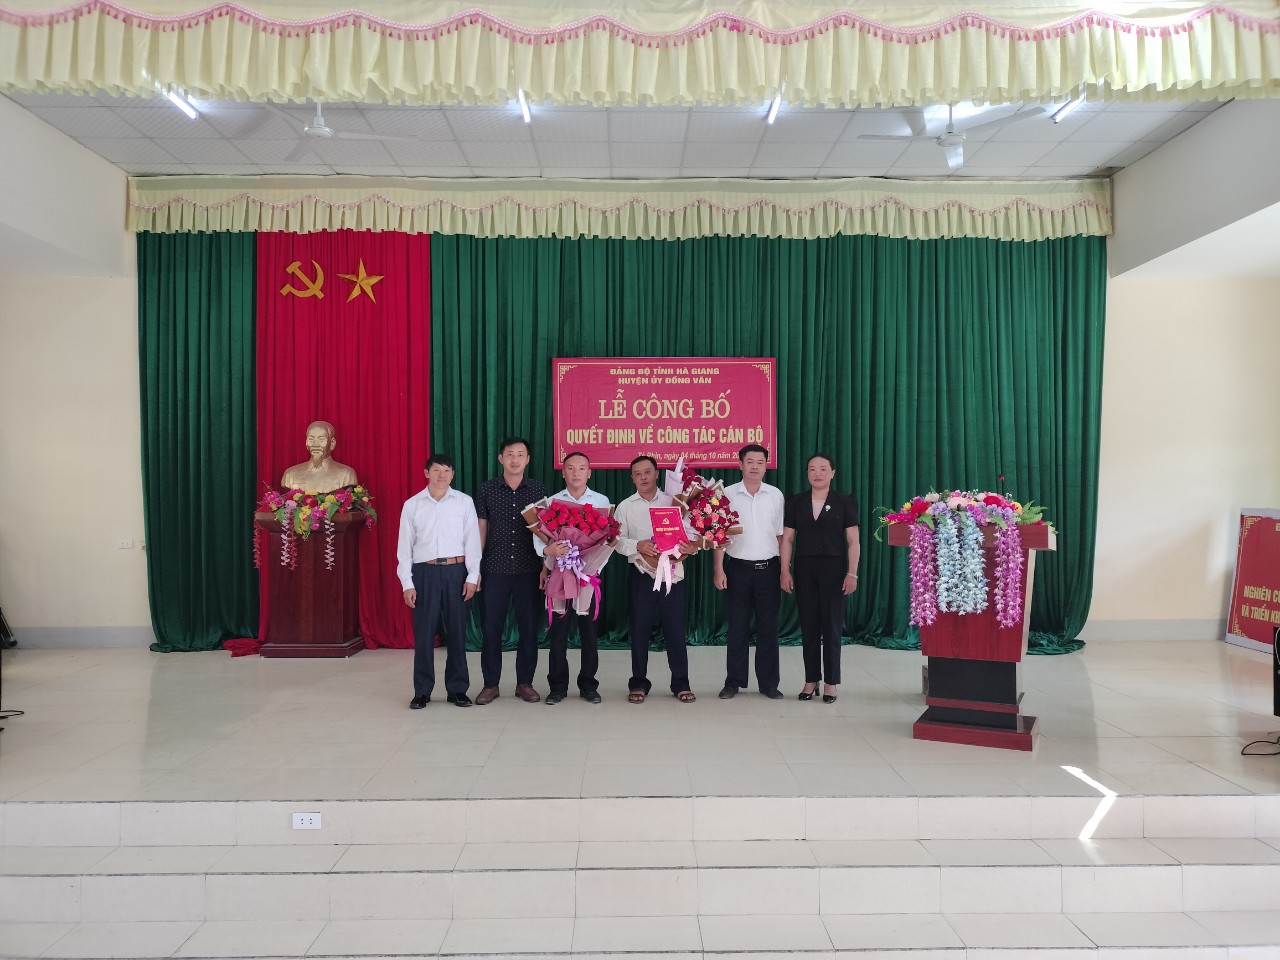 Ban Thường vụ huyện ủy Đồng Văn Công bố Quyết định về công tác cán bộ tại xã Tả Phìn